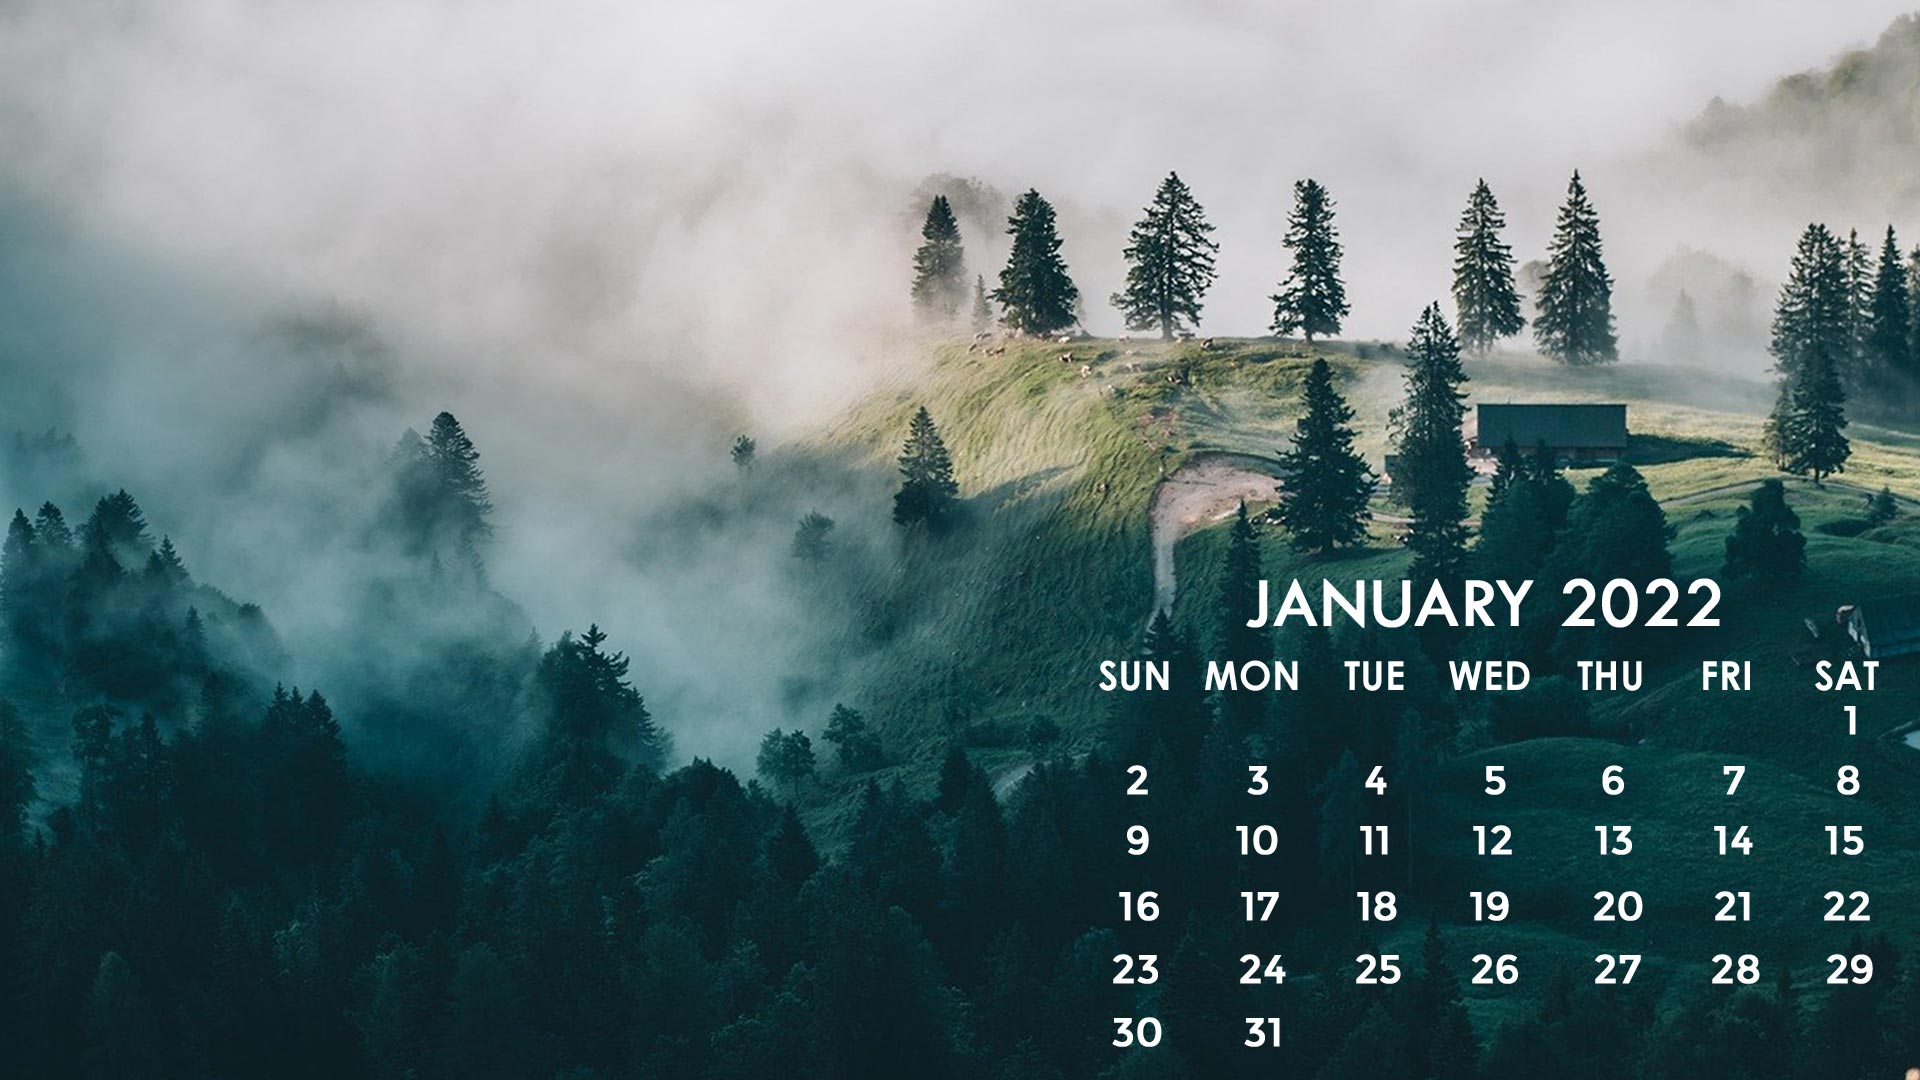 Hình nền miễn phí tháng 1 năm 2022: Đến với chúng tôi ngay hôm nay để có được những hình nền miễn phí đẹp nhất tháng 1 năm 